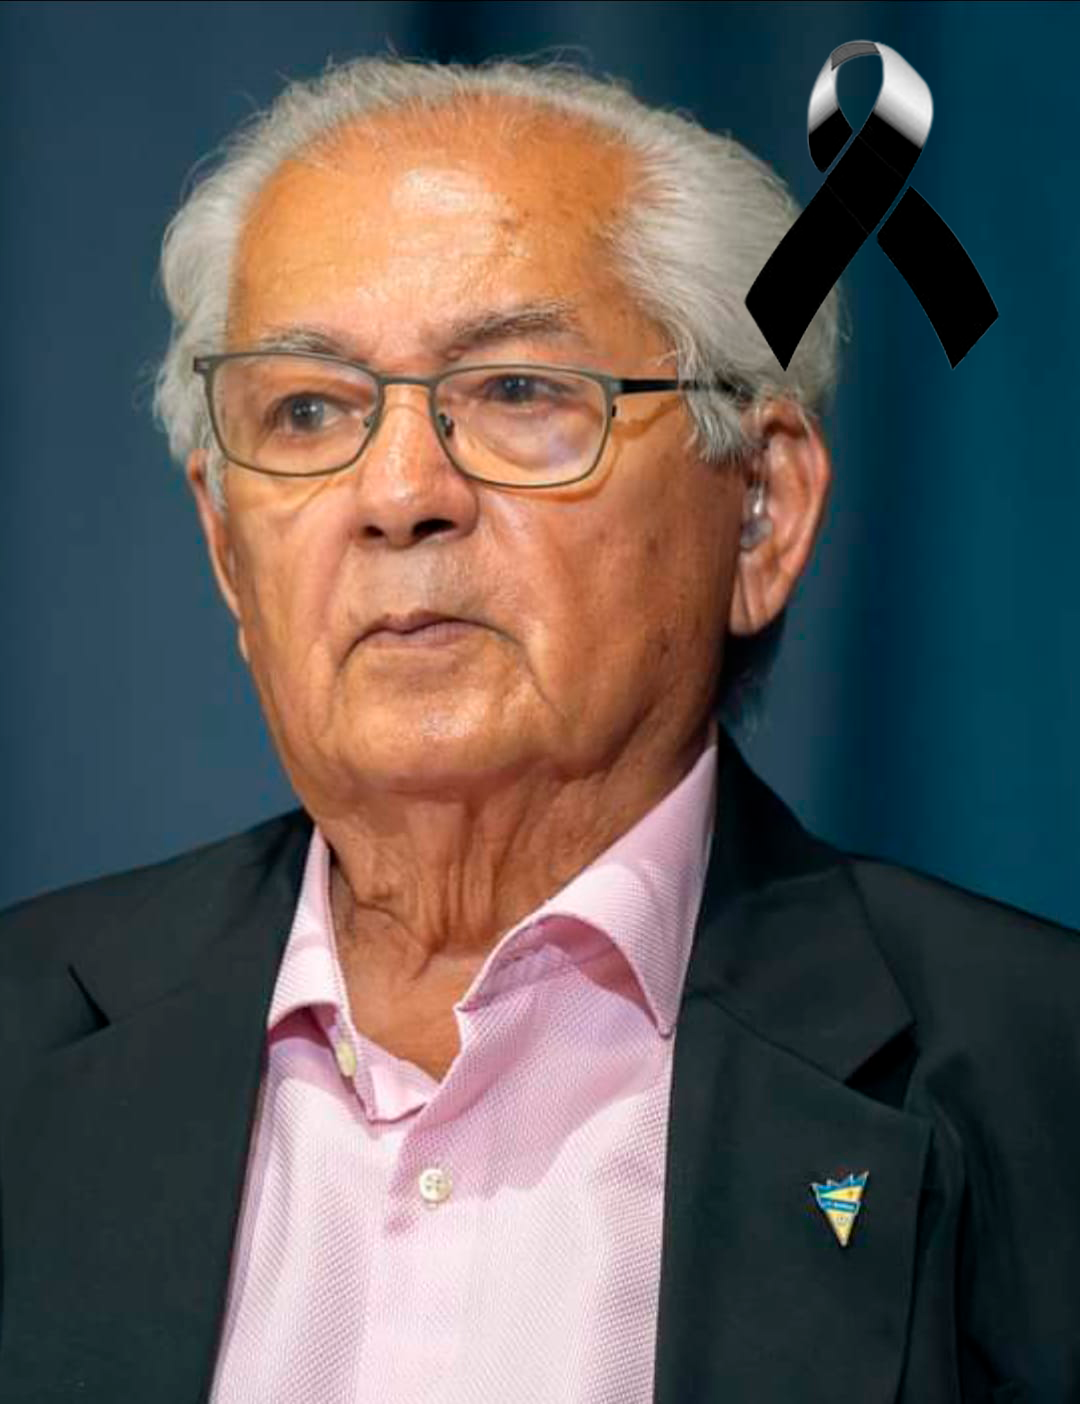 La Asociación de Vecinos Amagro de Barrial, lamenta profundamente el fallecimiento de D. Manuel García Martín